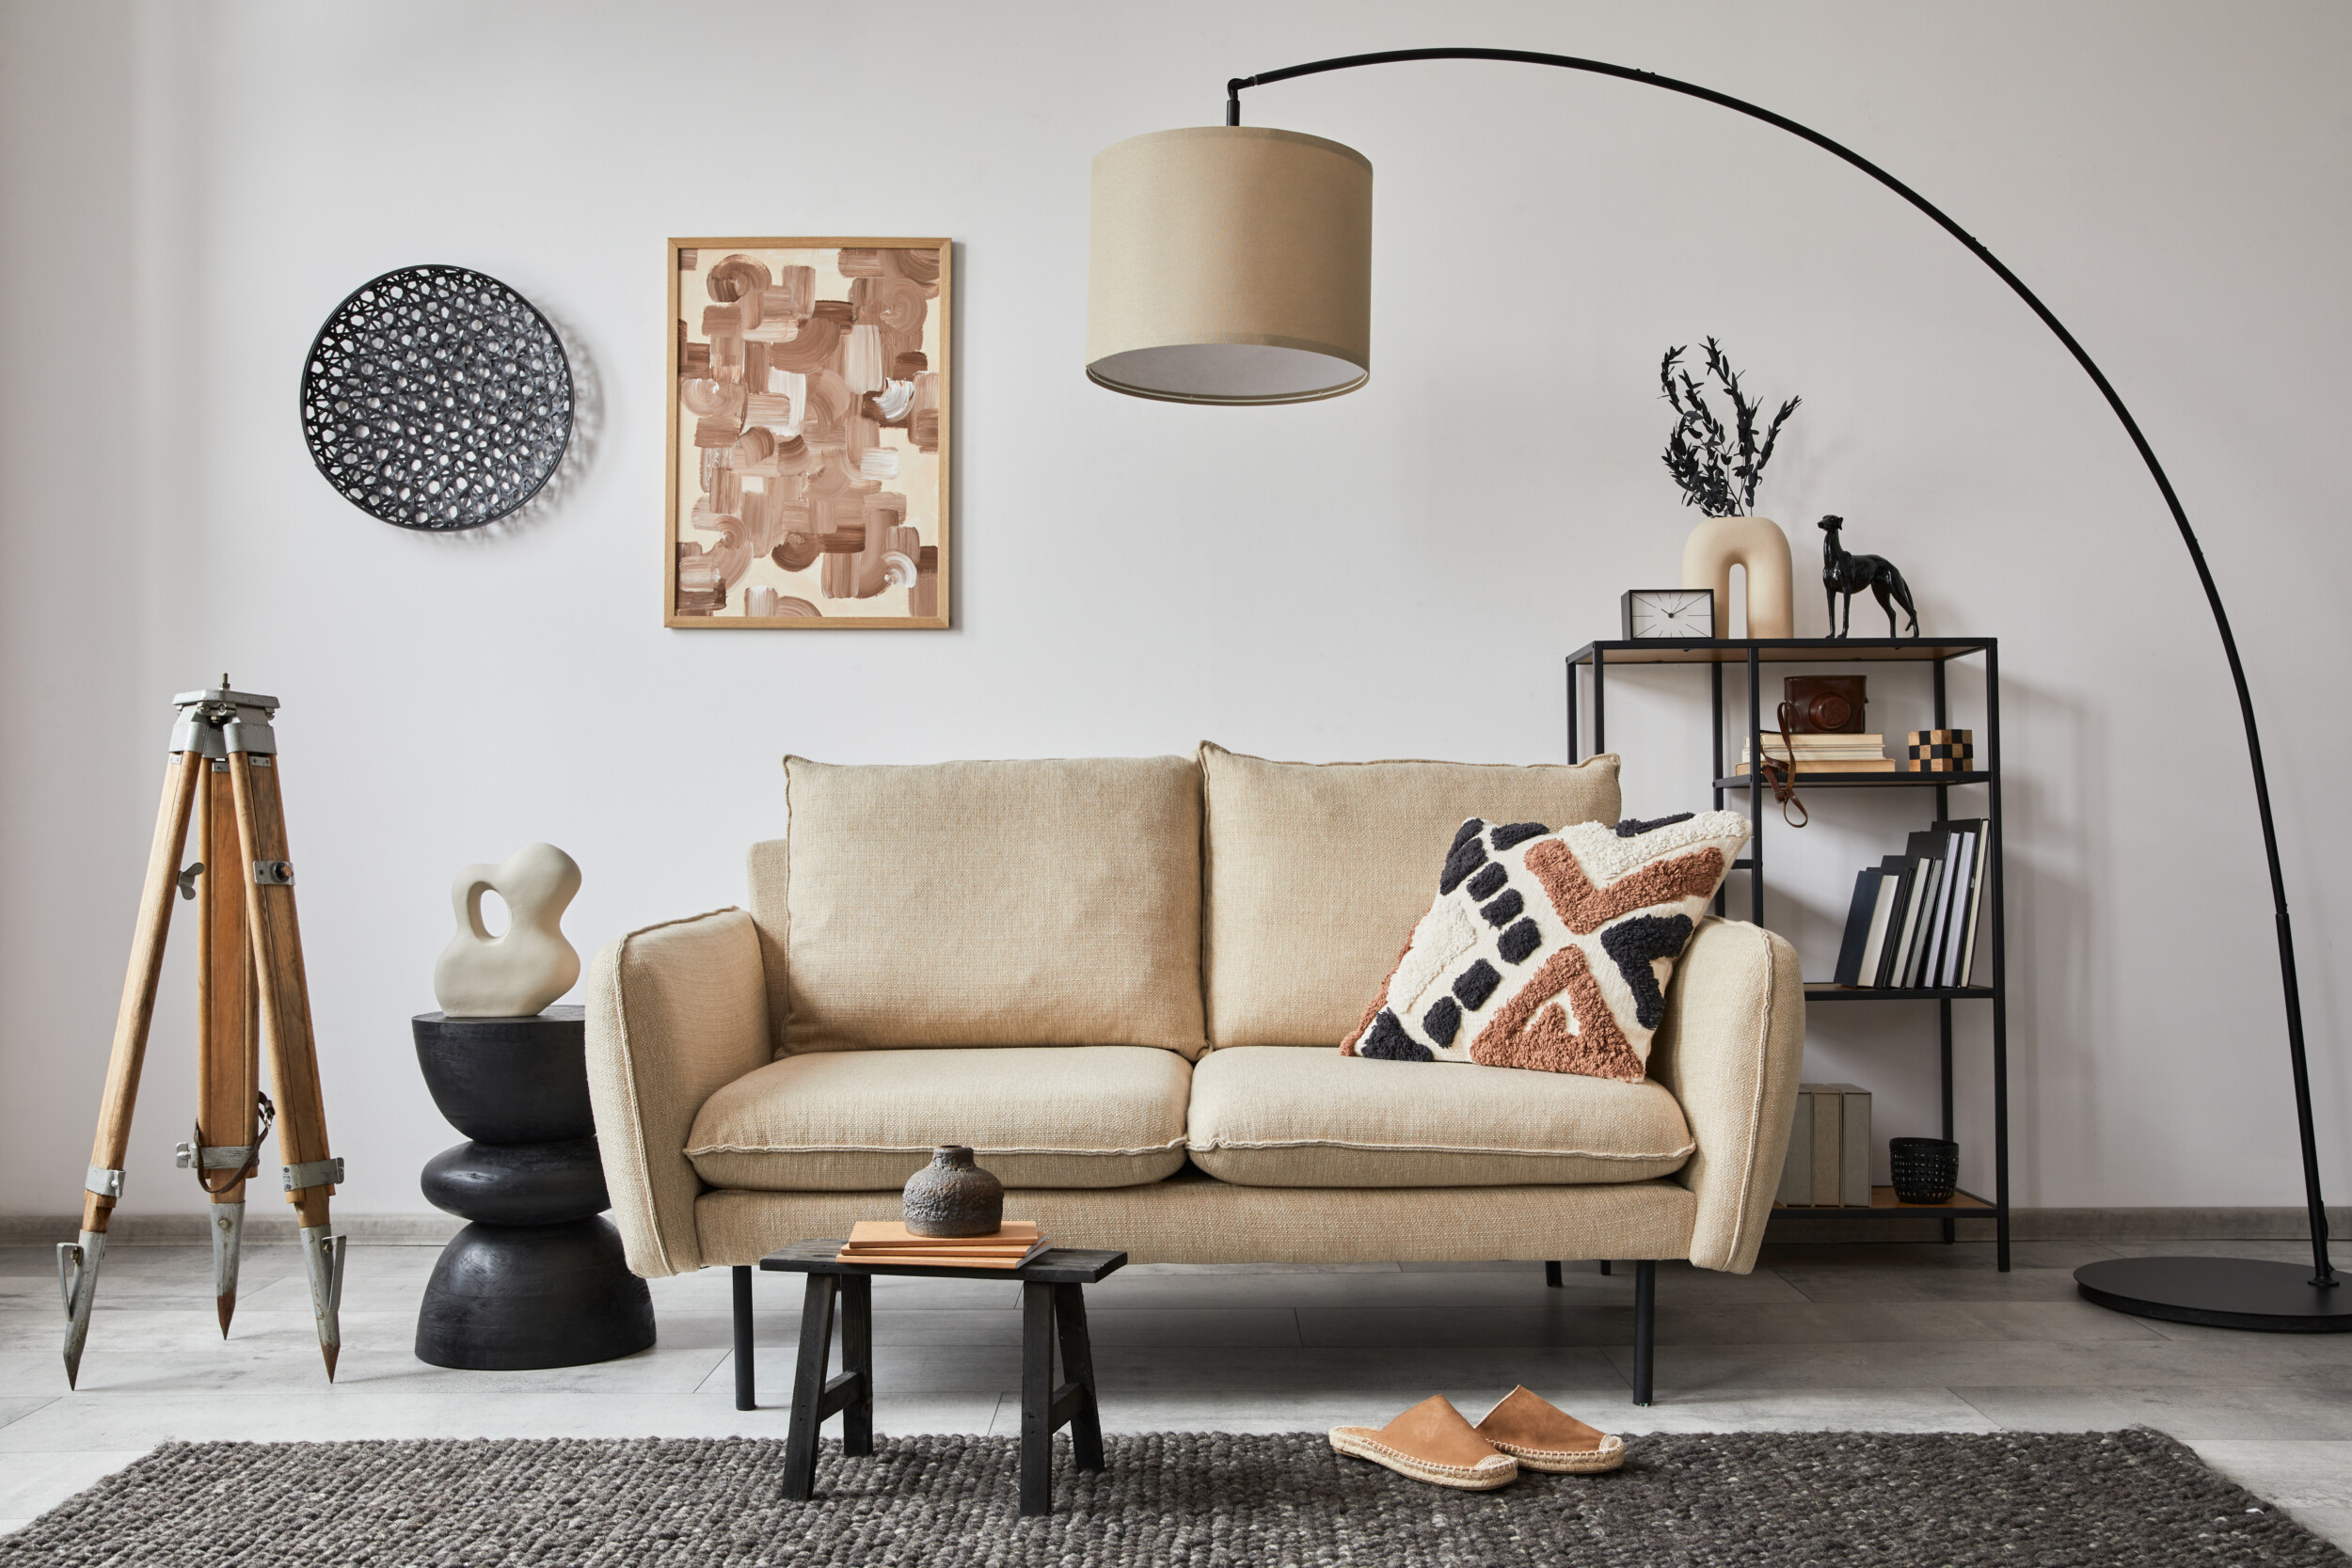 trang trí phòng khách nhỏ với tranh, sofa và đèn